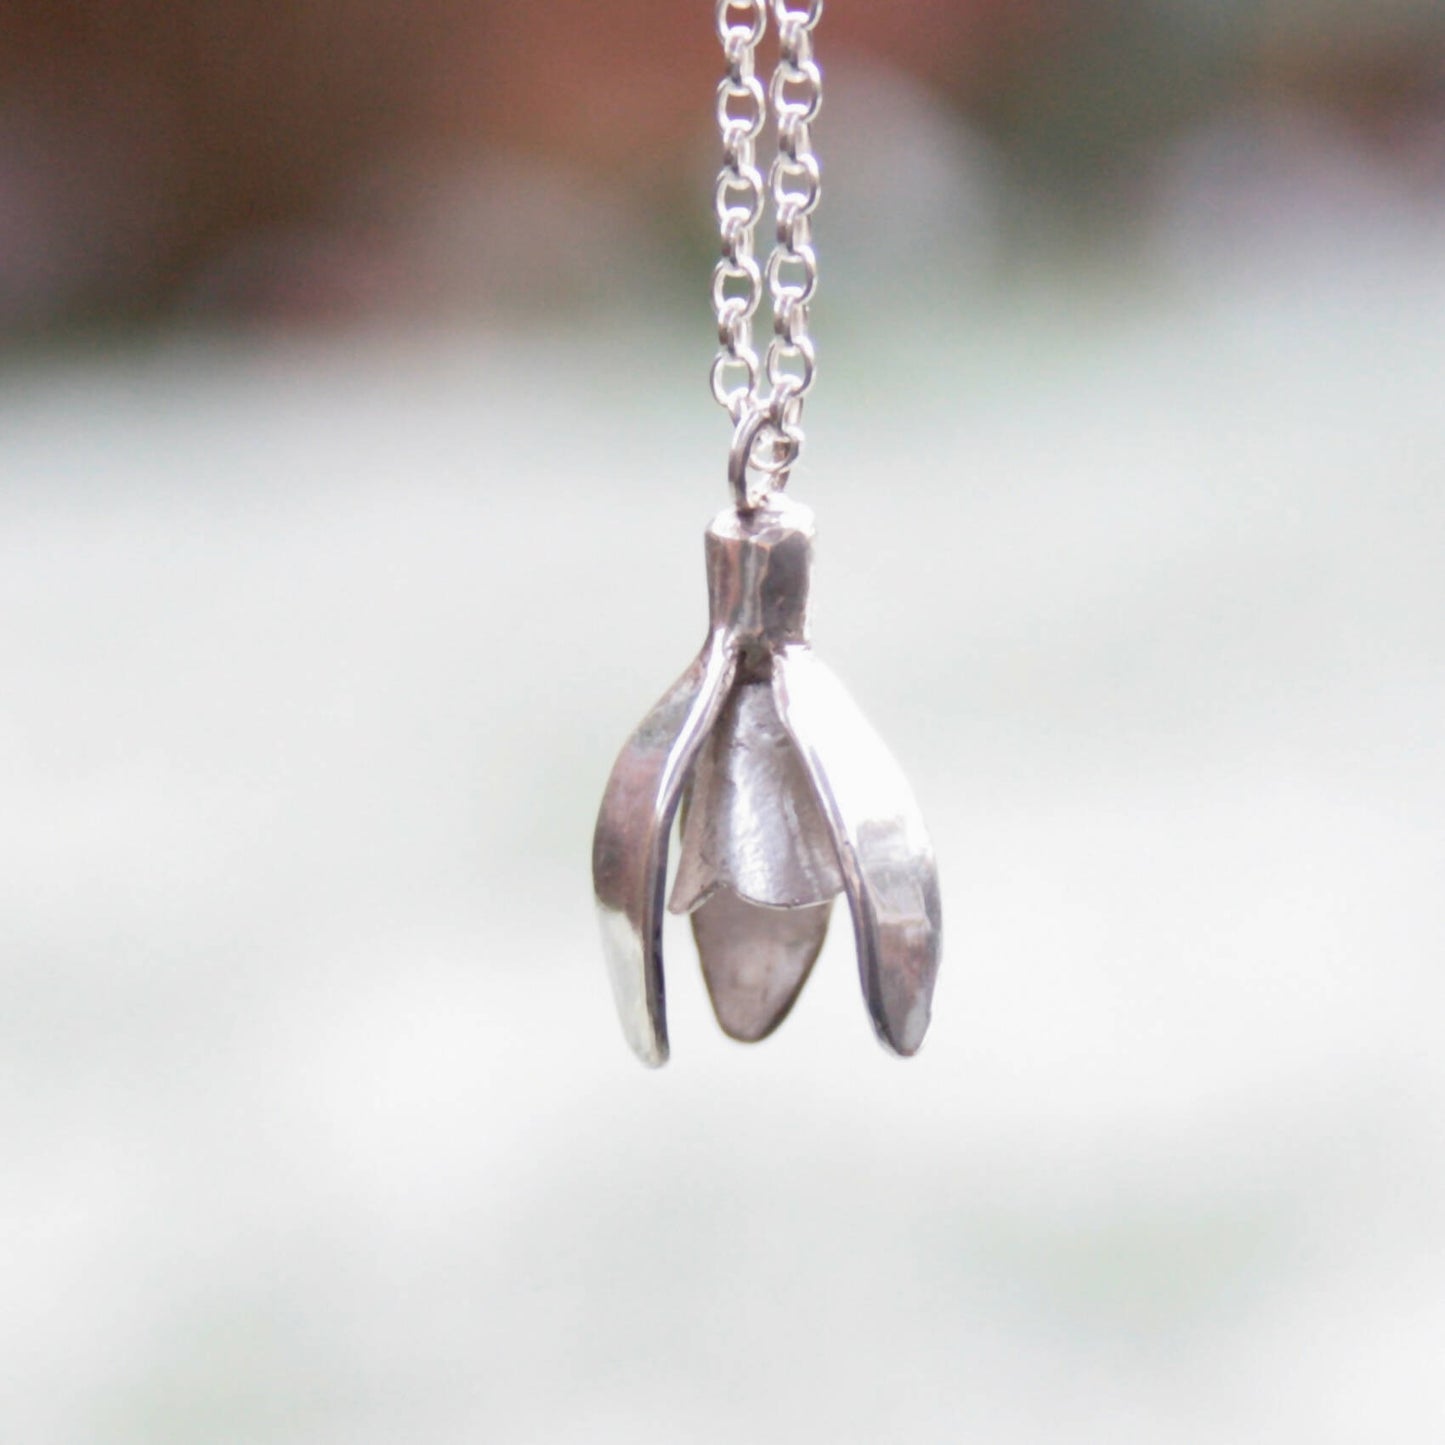 Silver snowdrop necklace